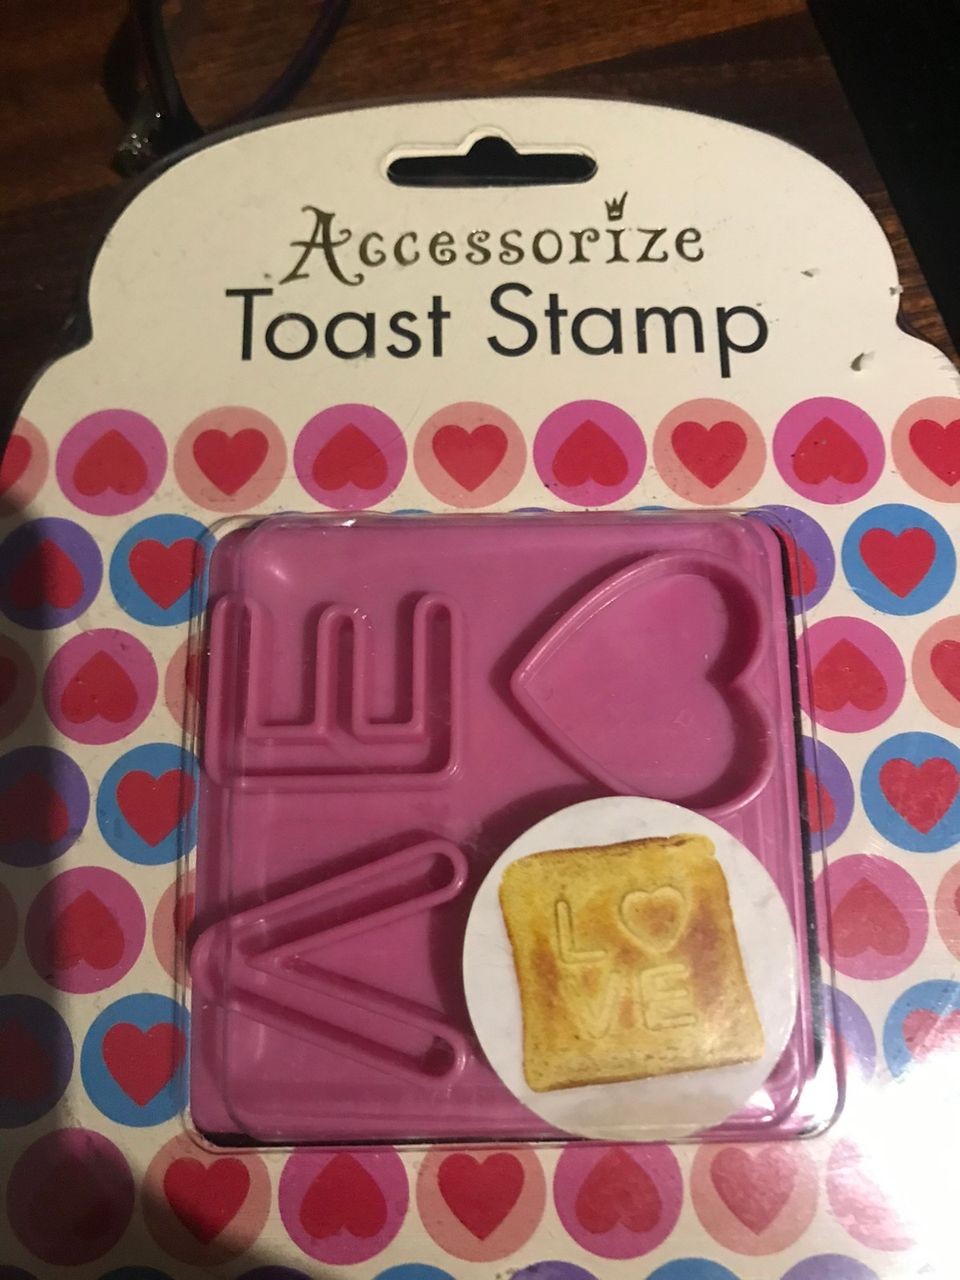 Toast stamp